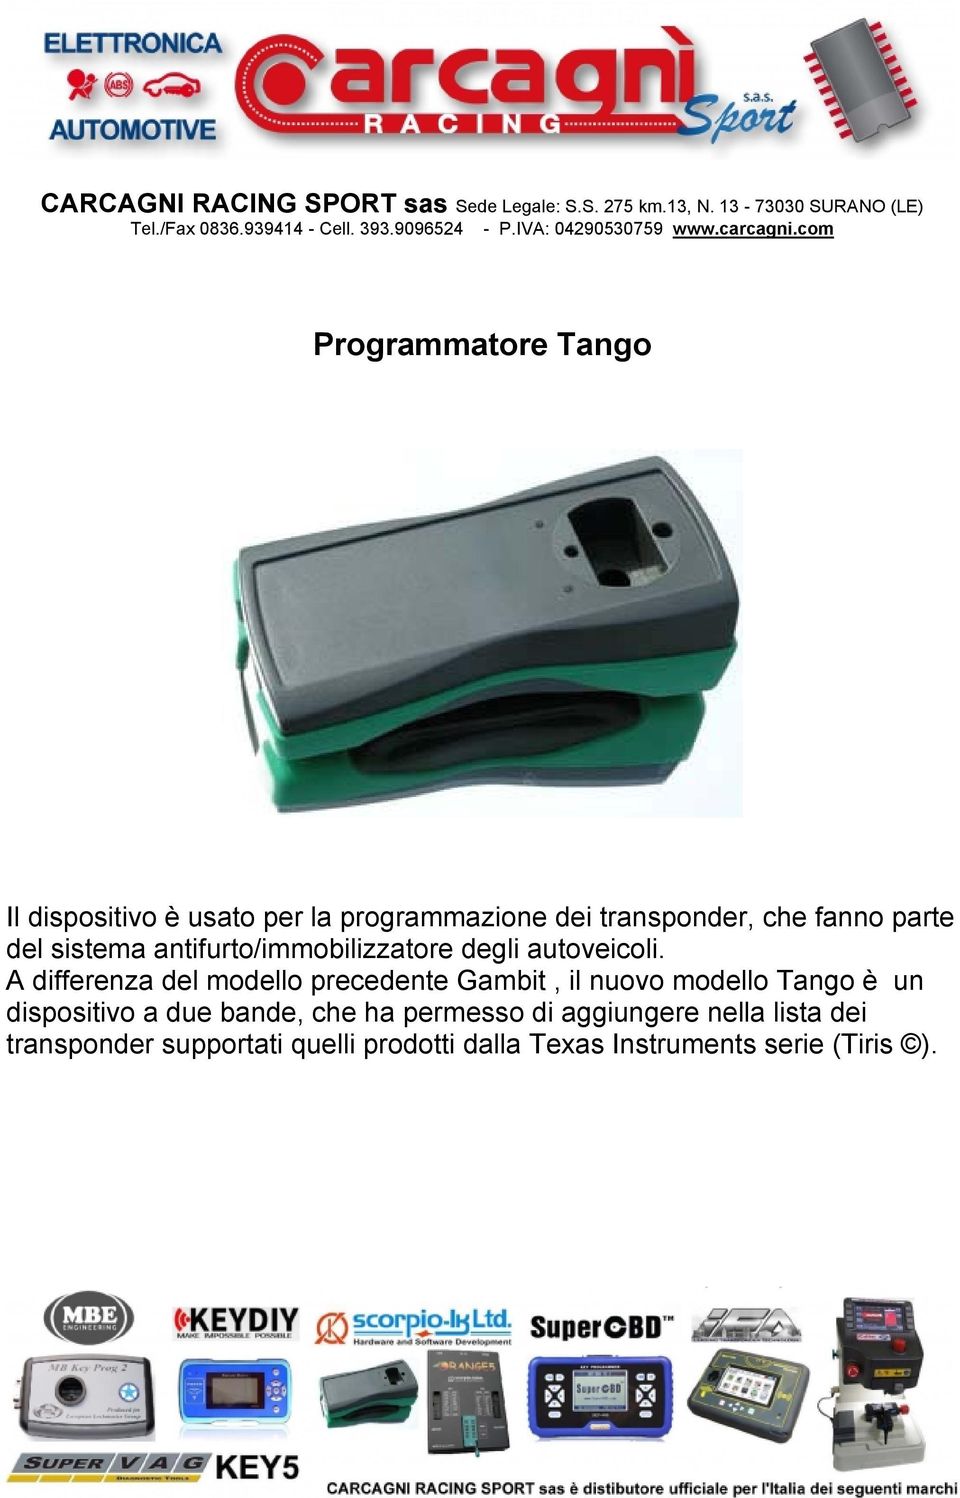 A differenza del modello precedente Gambit, il nuovo modello Tango è un dispositivo a due